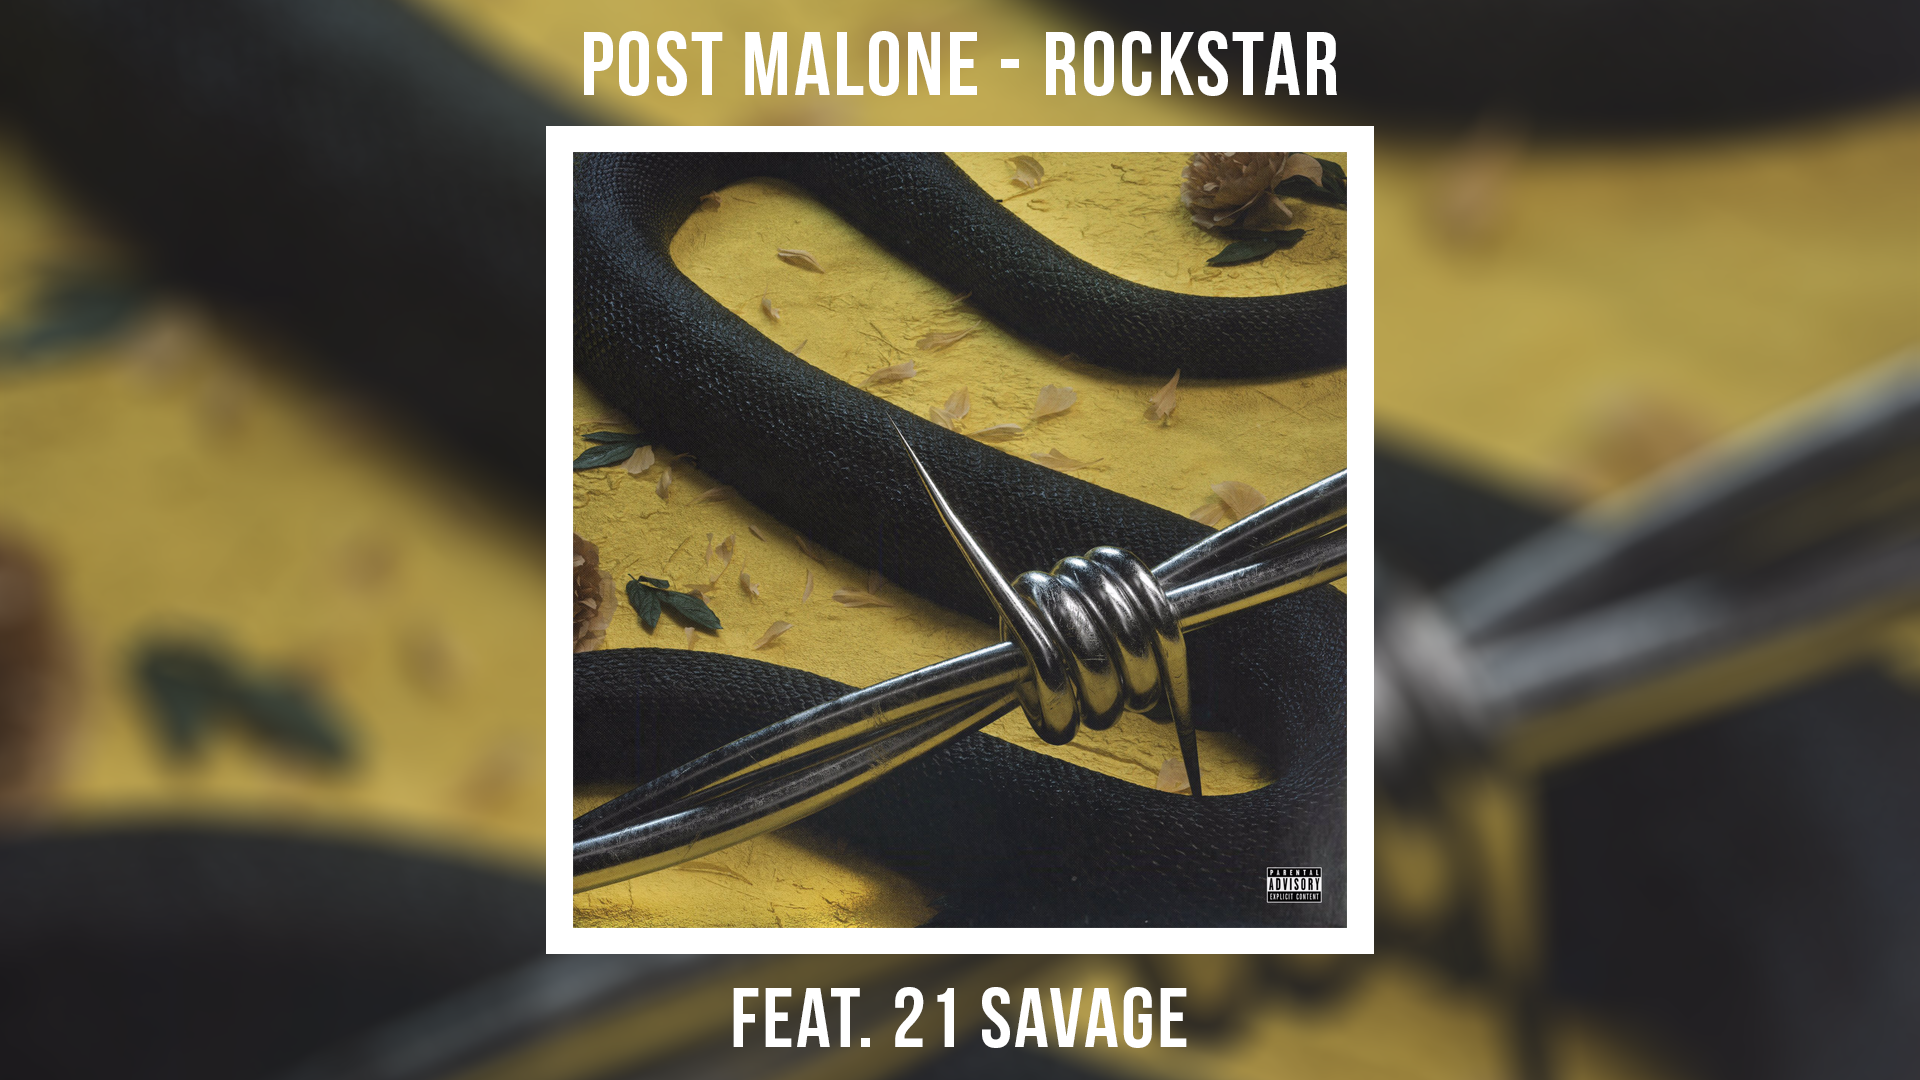 Post 21 rockstar. Post Malone 21 Savage Rockstar. Post Malone Rockstar обложка. Rockstar Post Malone 21 Savage обложка. Post Malone Rockstar ft. 21 Savage обложка.